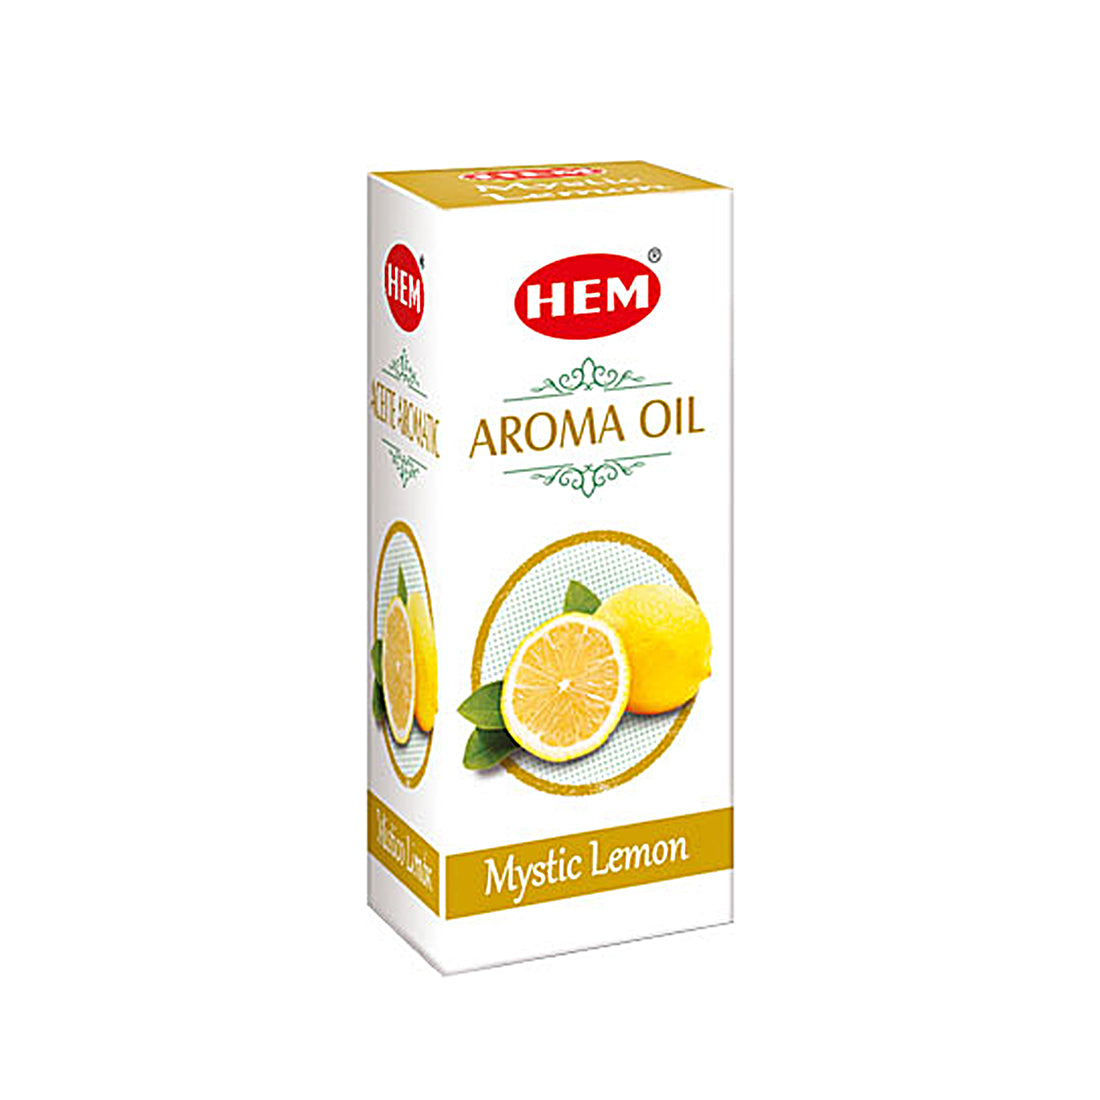 mystic-lemon-aroma-oil-pack